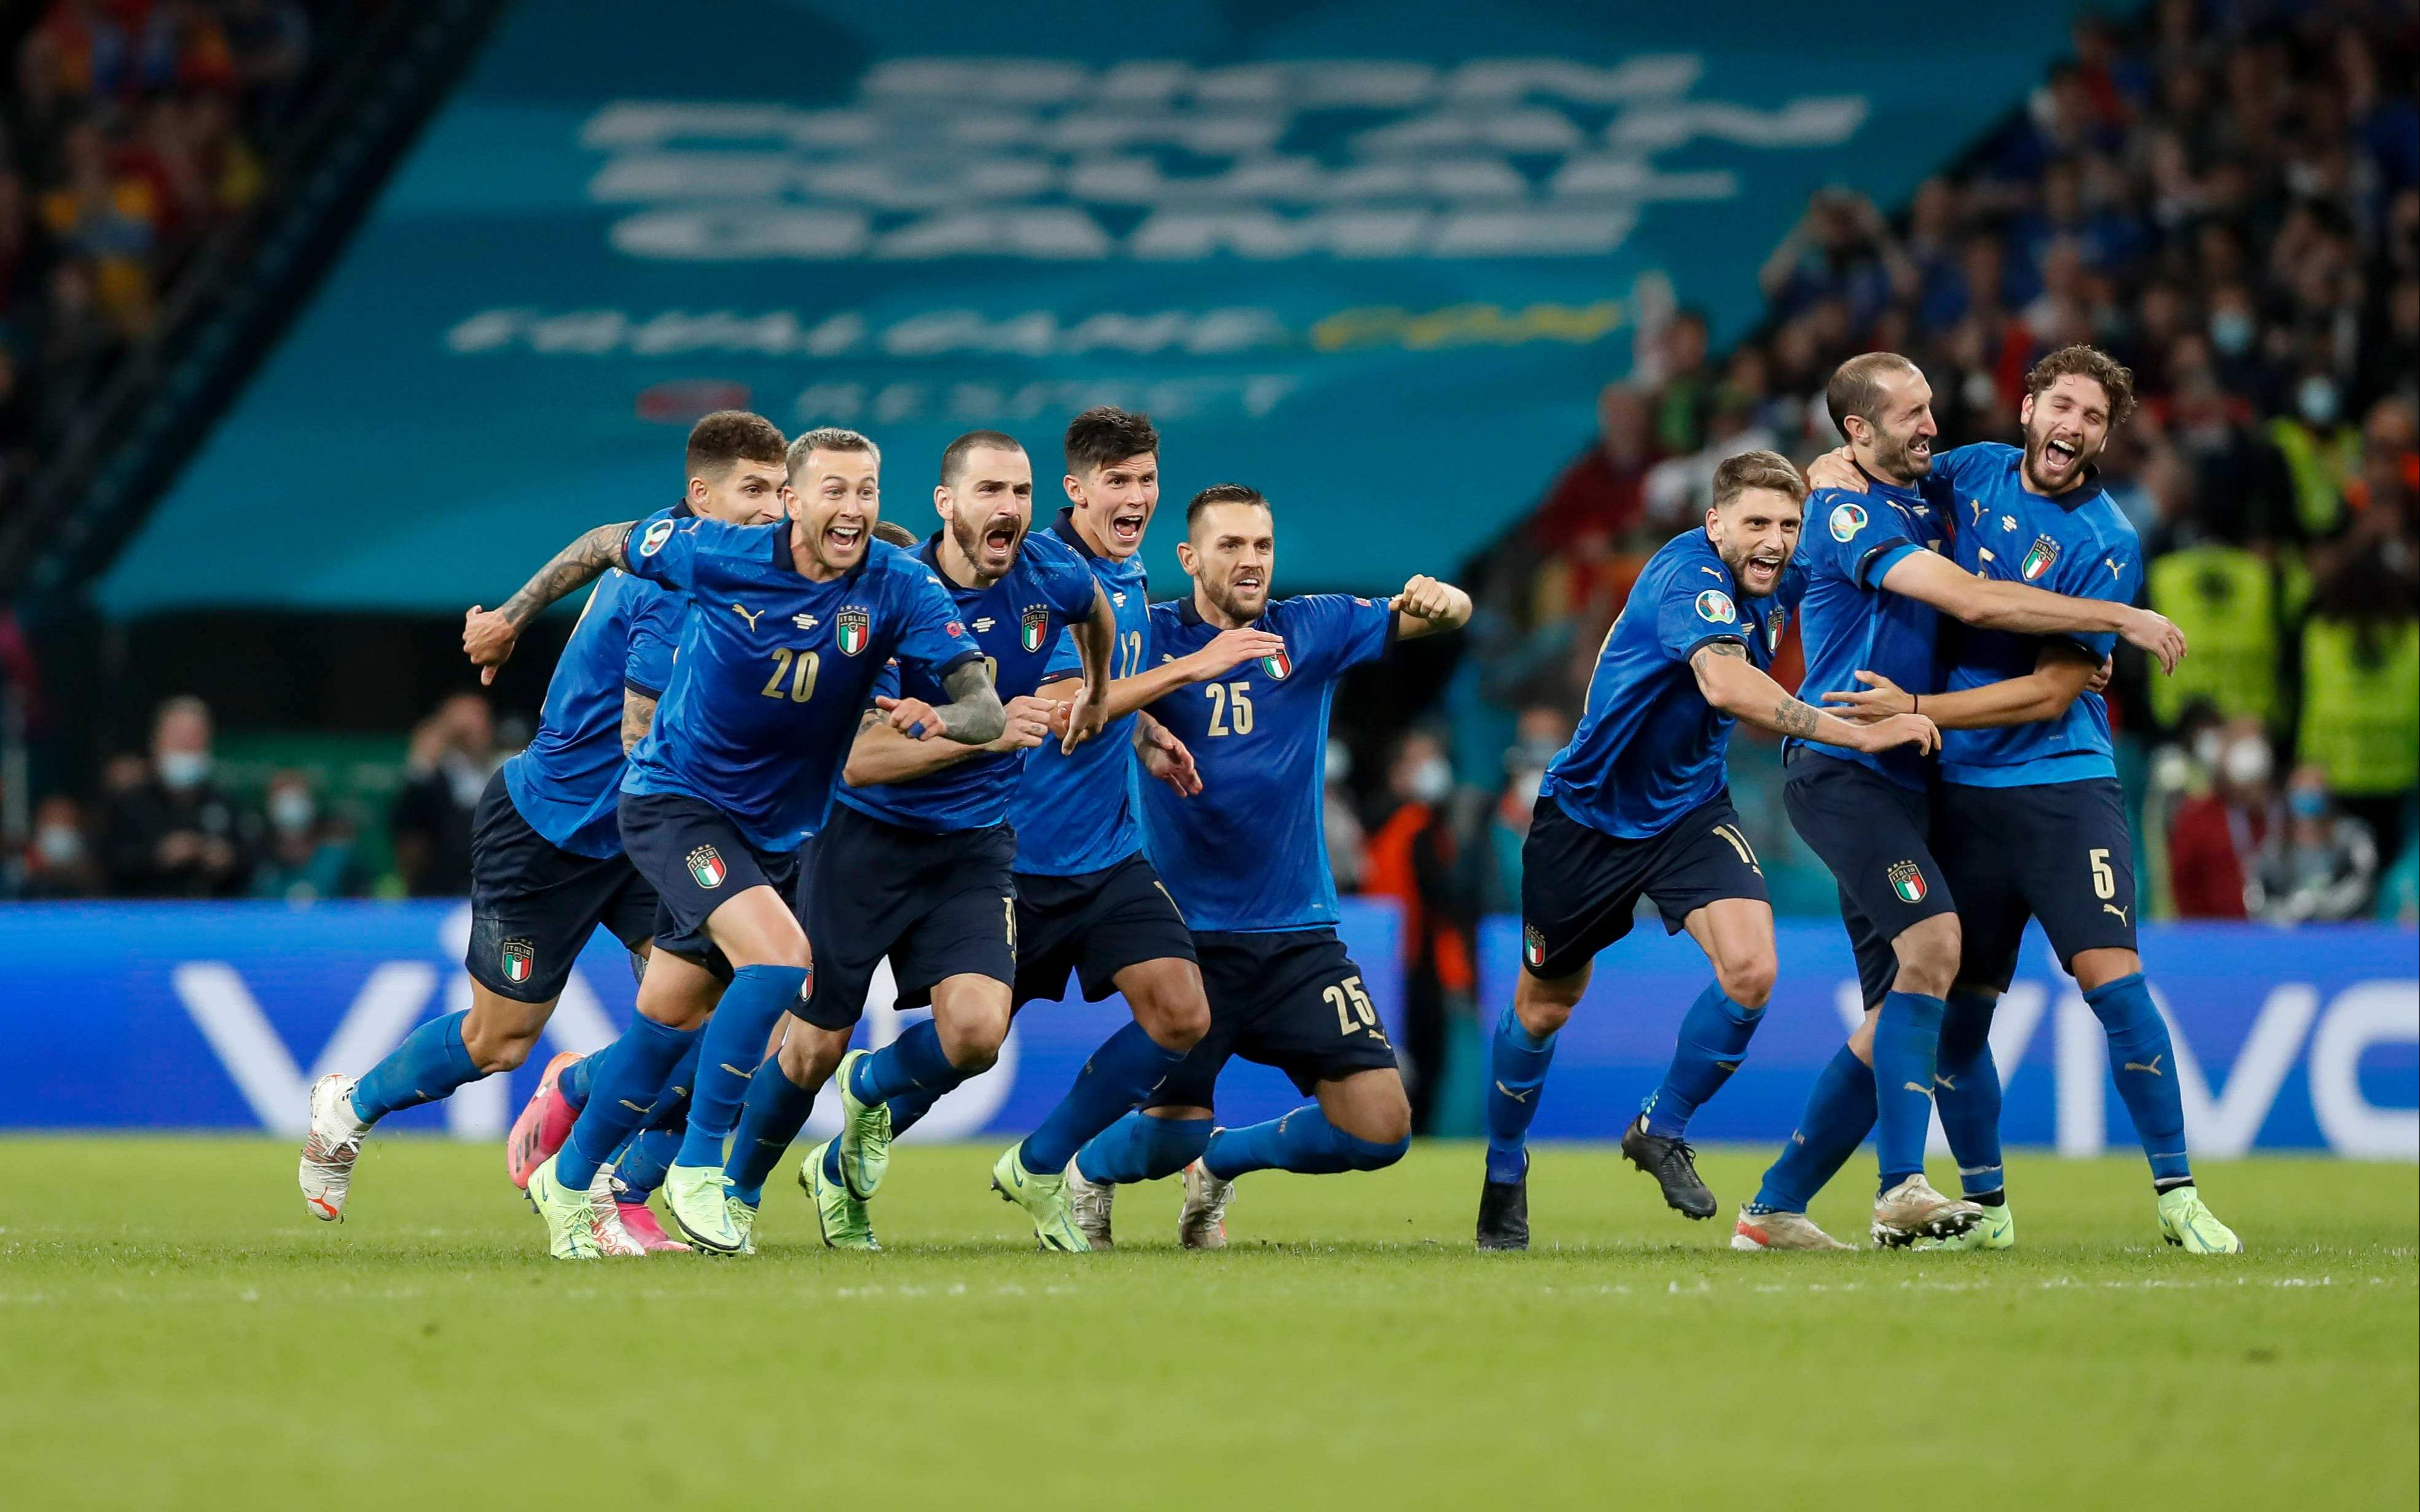 实况足球:意大利vs阿尔及利亚,意大利征战世界杯小组赛第二场